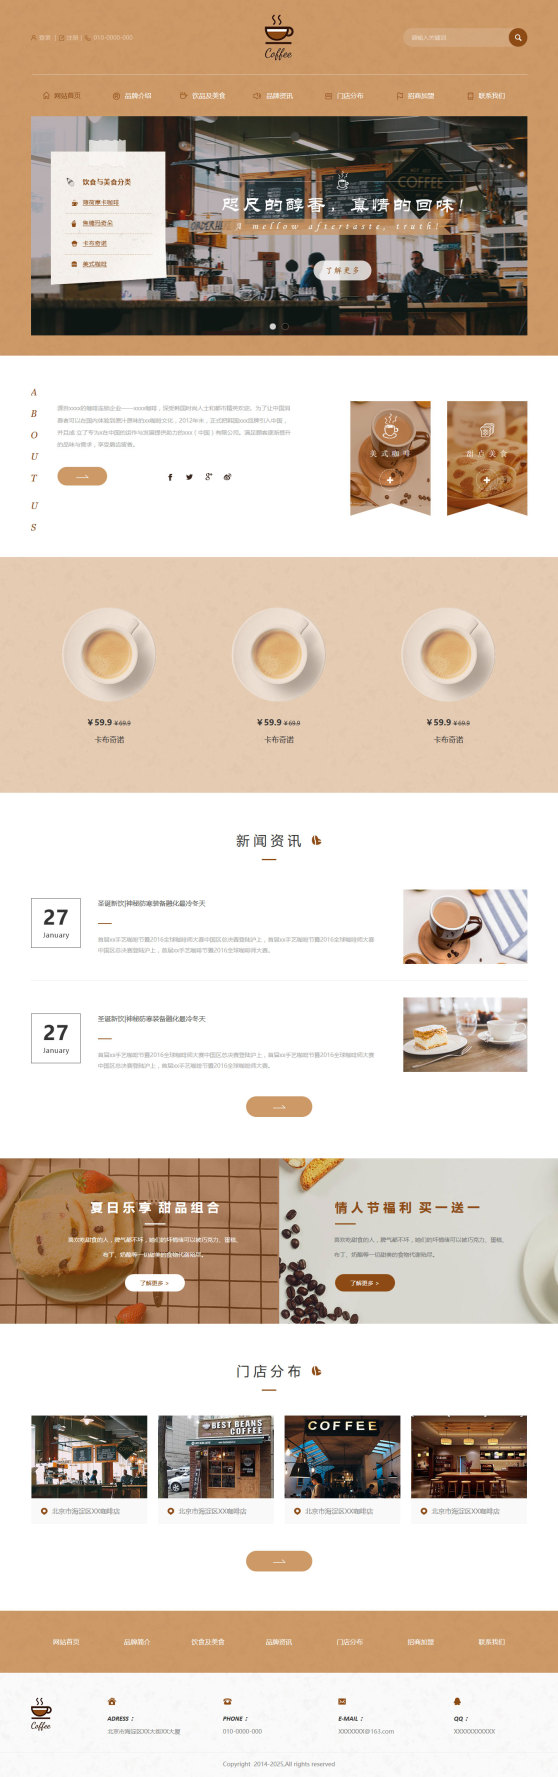 精品咖啡店企业网页模板